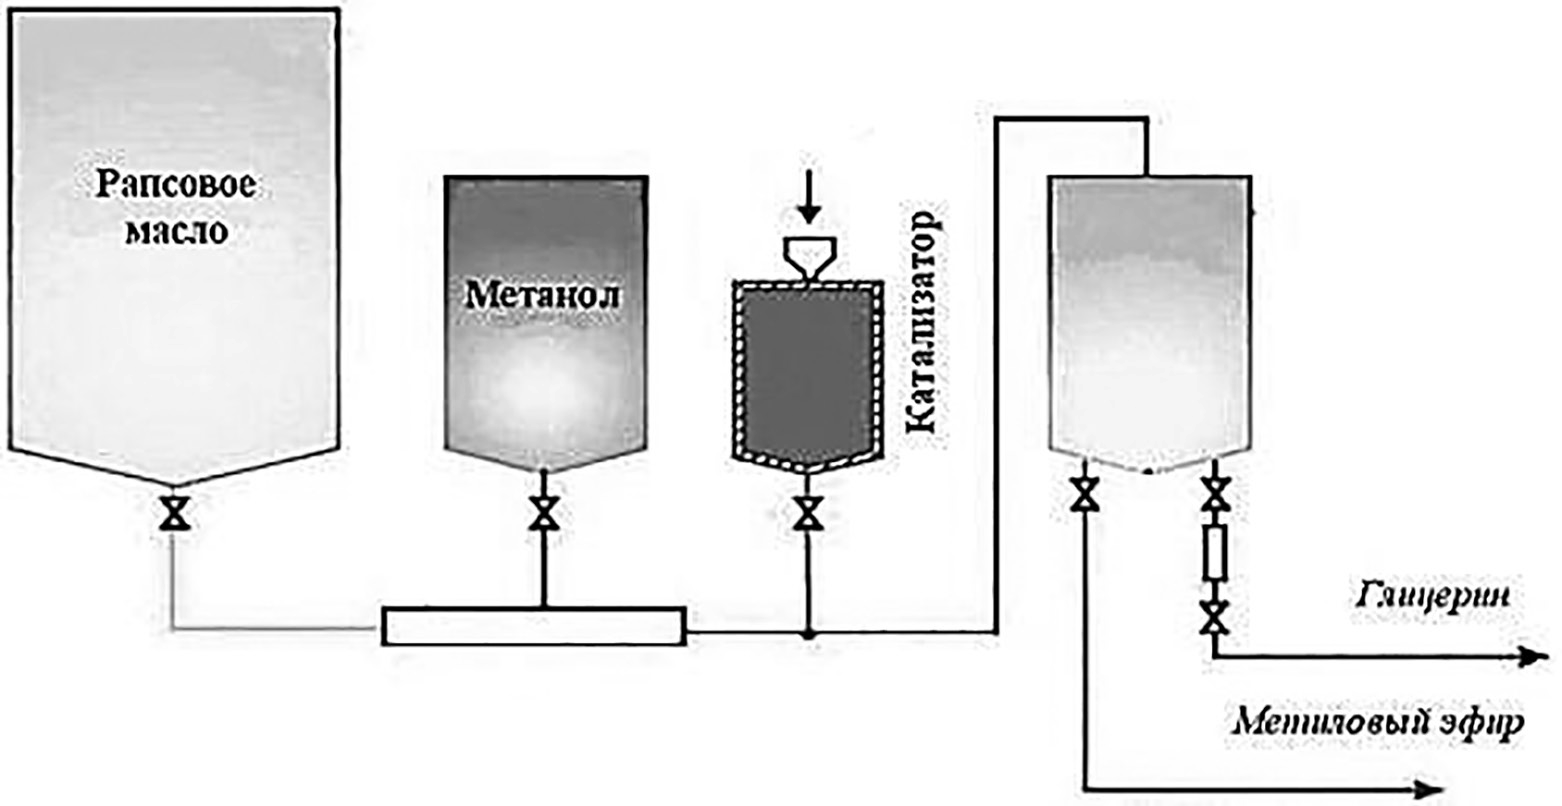 Схема получения биоэтанола из рапсового масла 